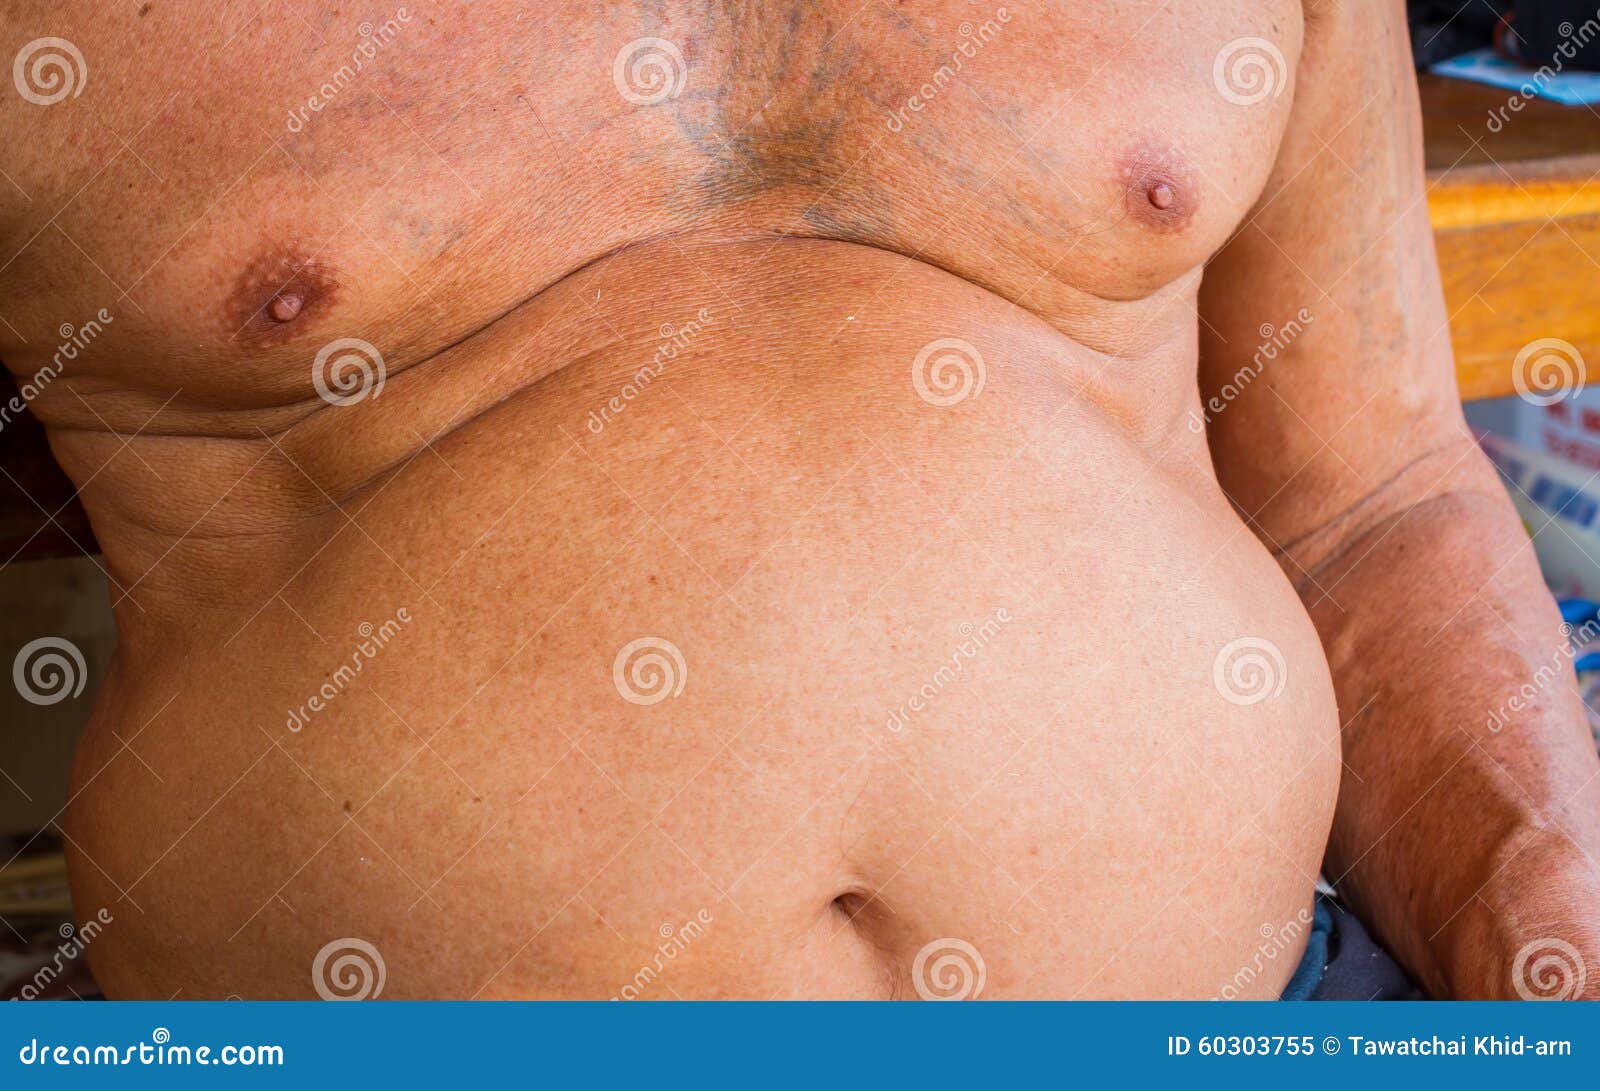 closeup fat asian man has a big paunch